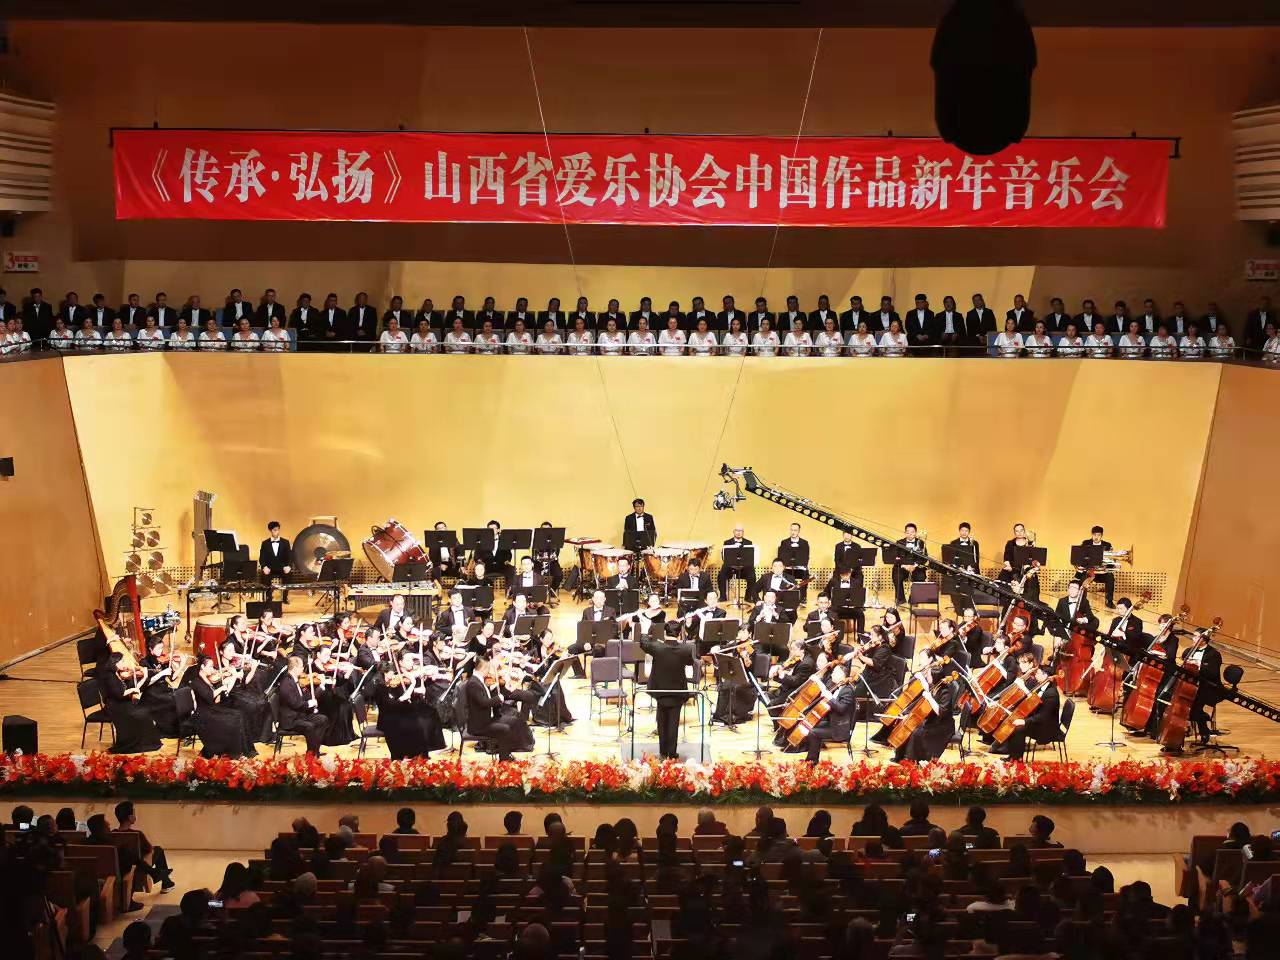 《传承·弘扬》音乐会奏响新年乐章